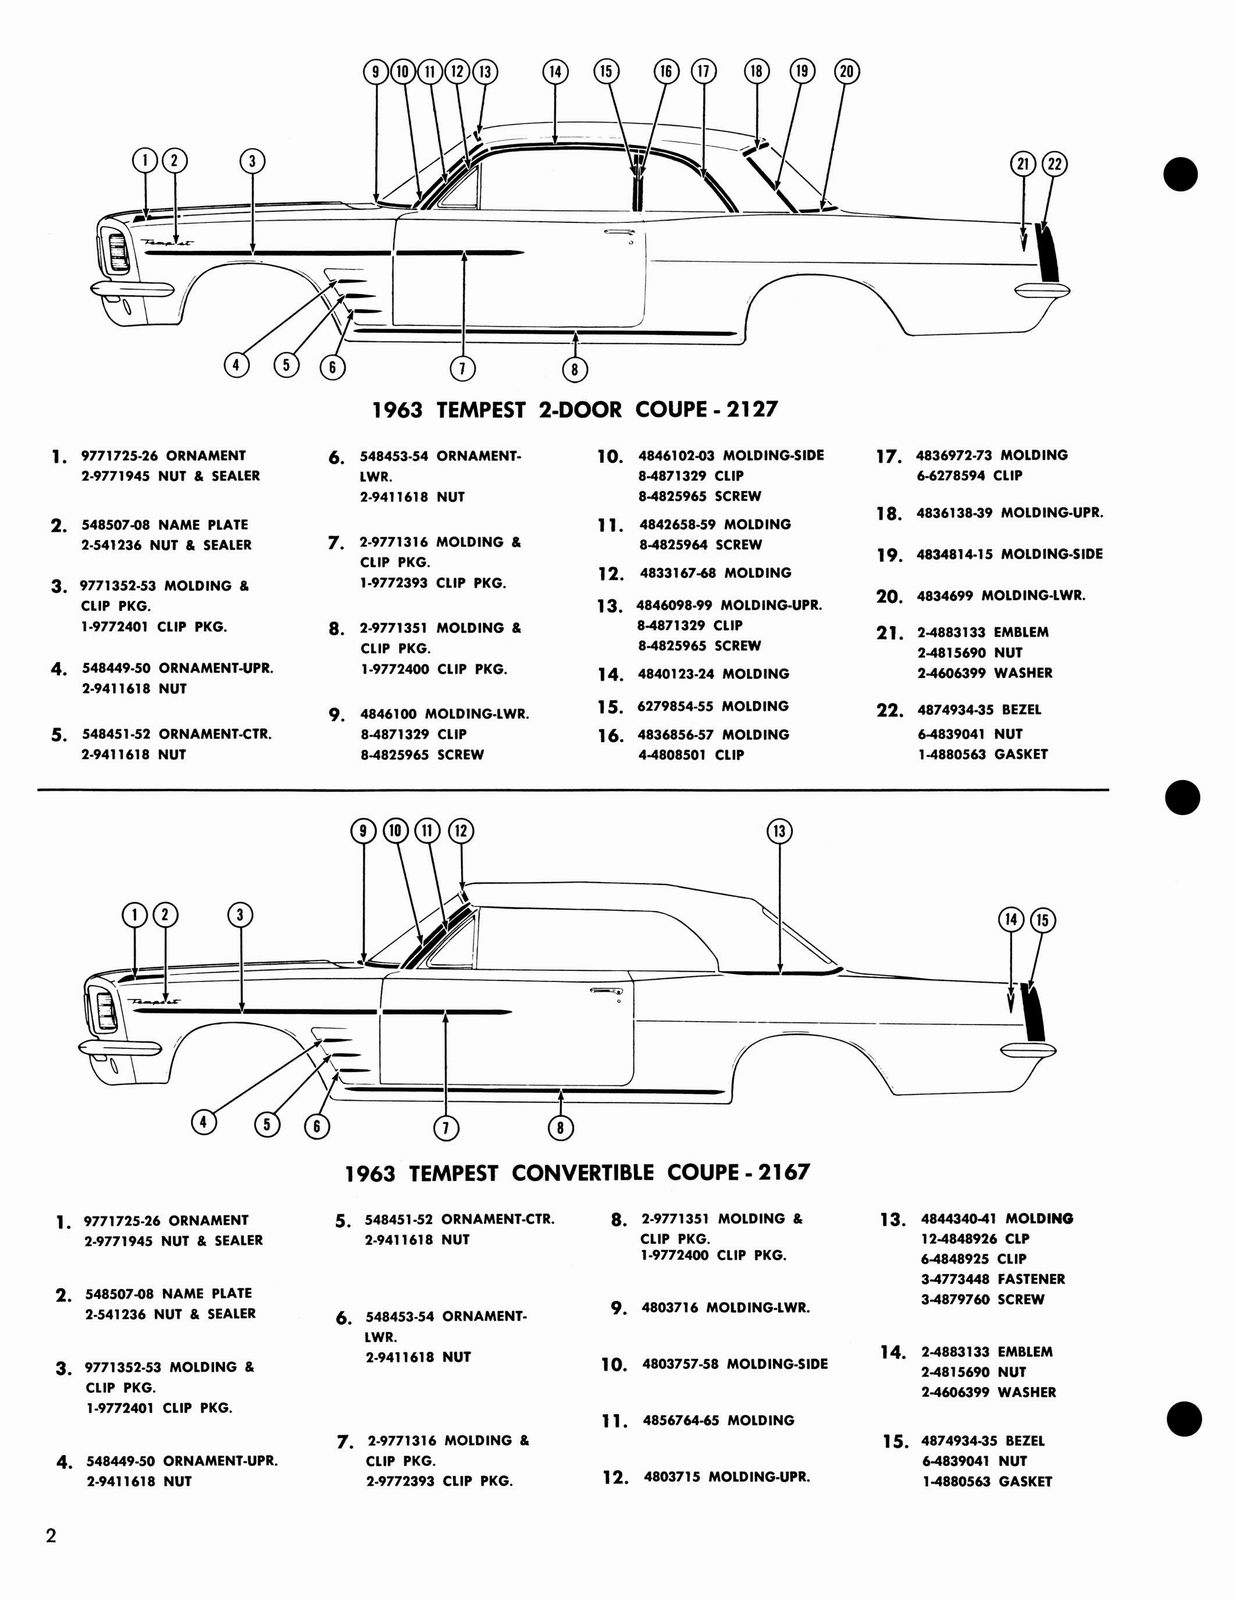 n_1963 Pontiac Moldings and Clips-04.jpg